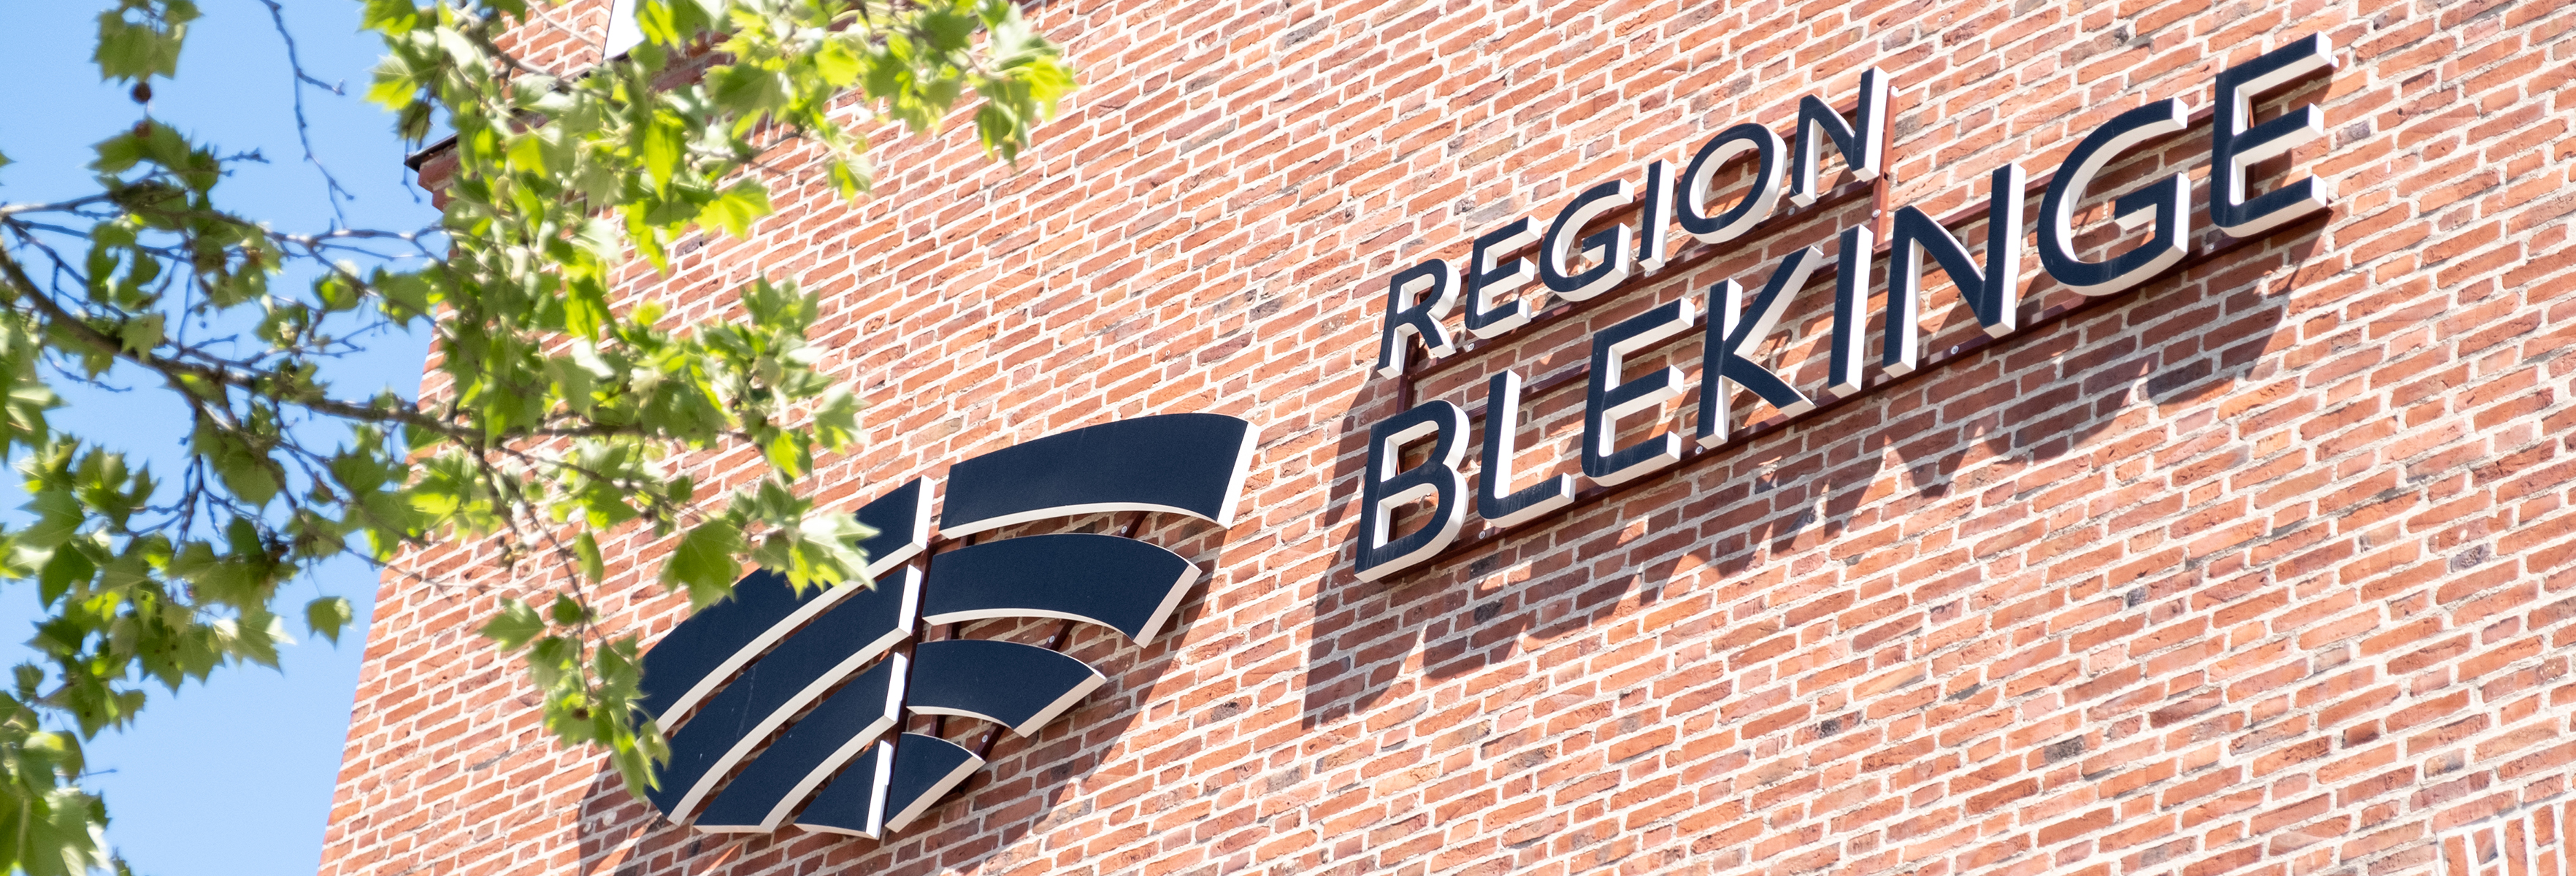 Logo Region Blekinge